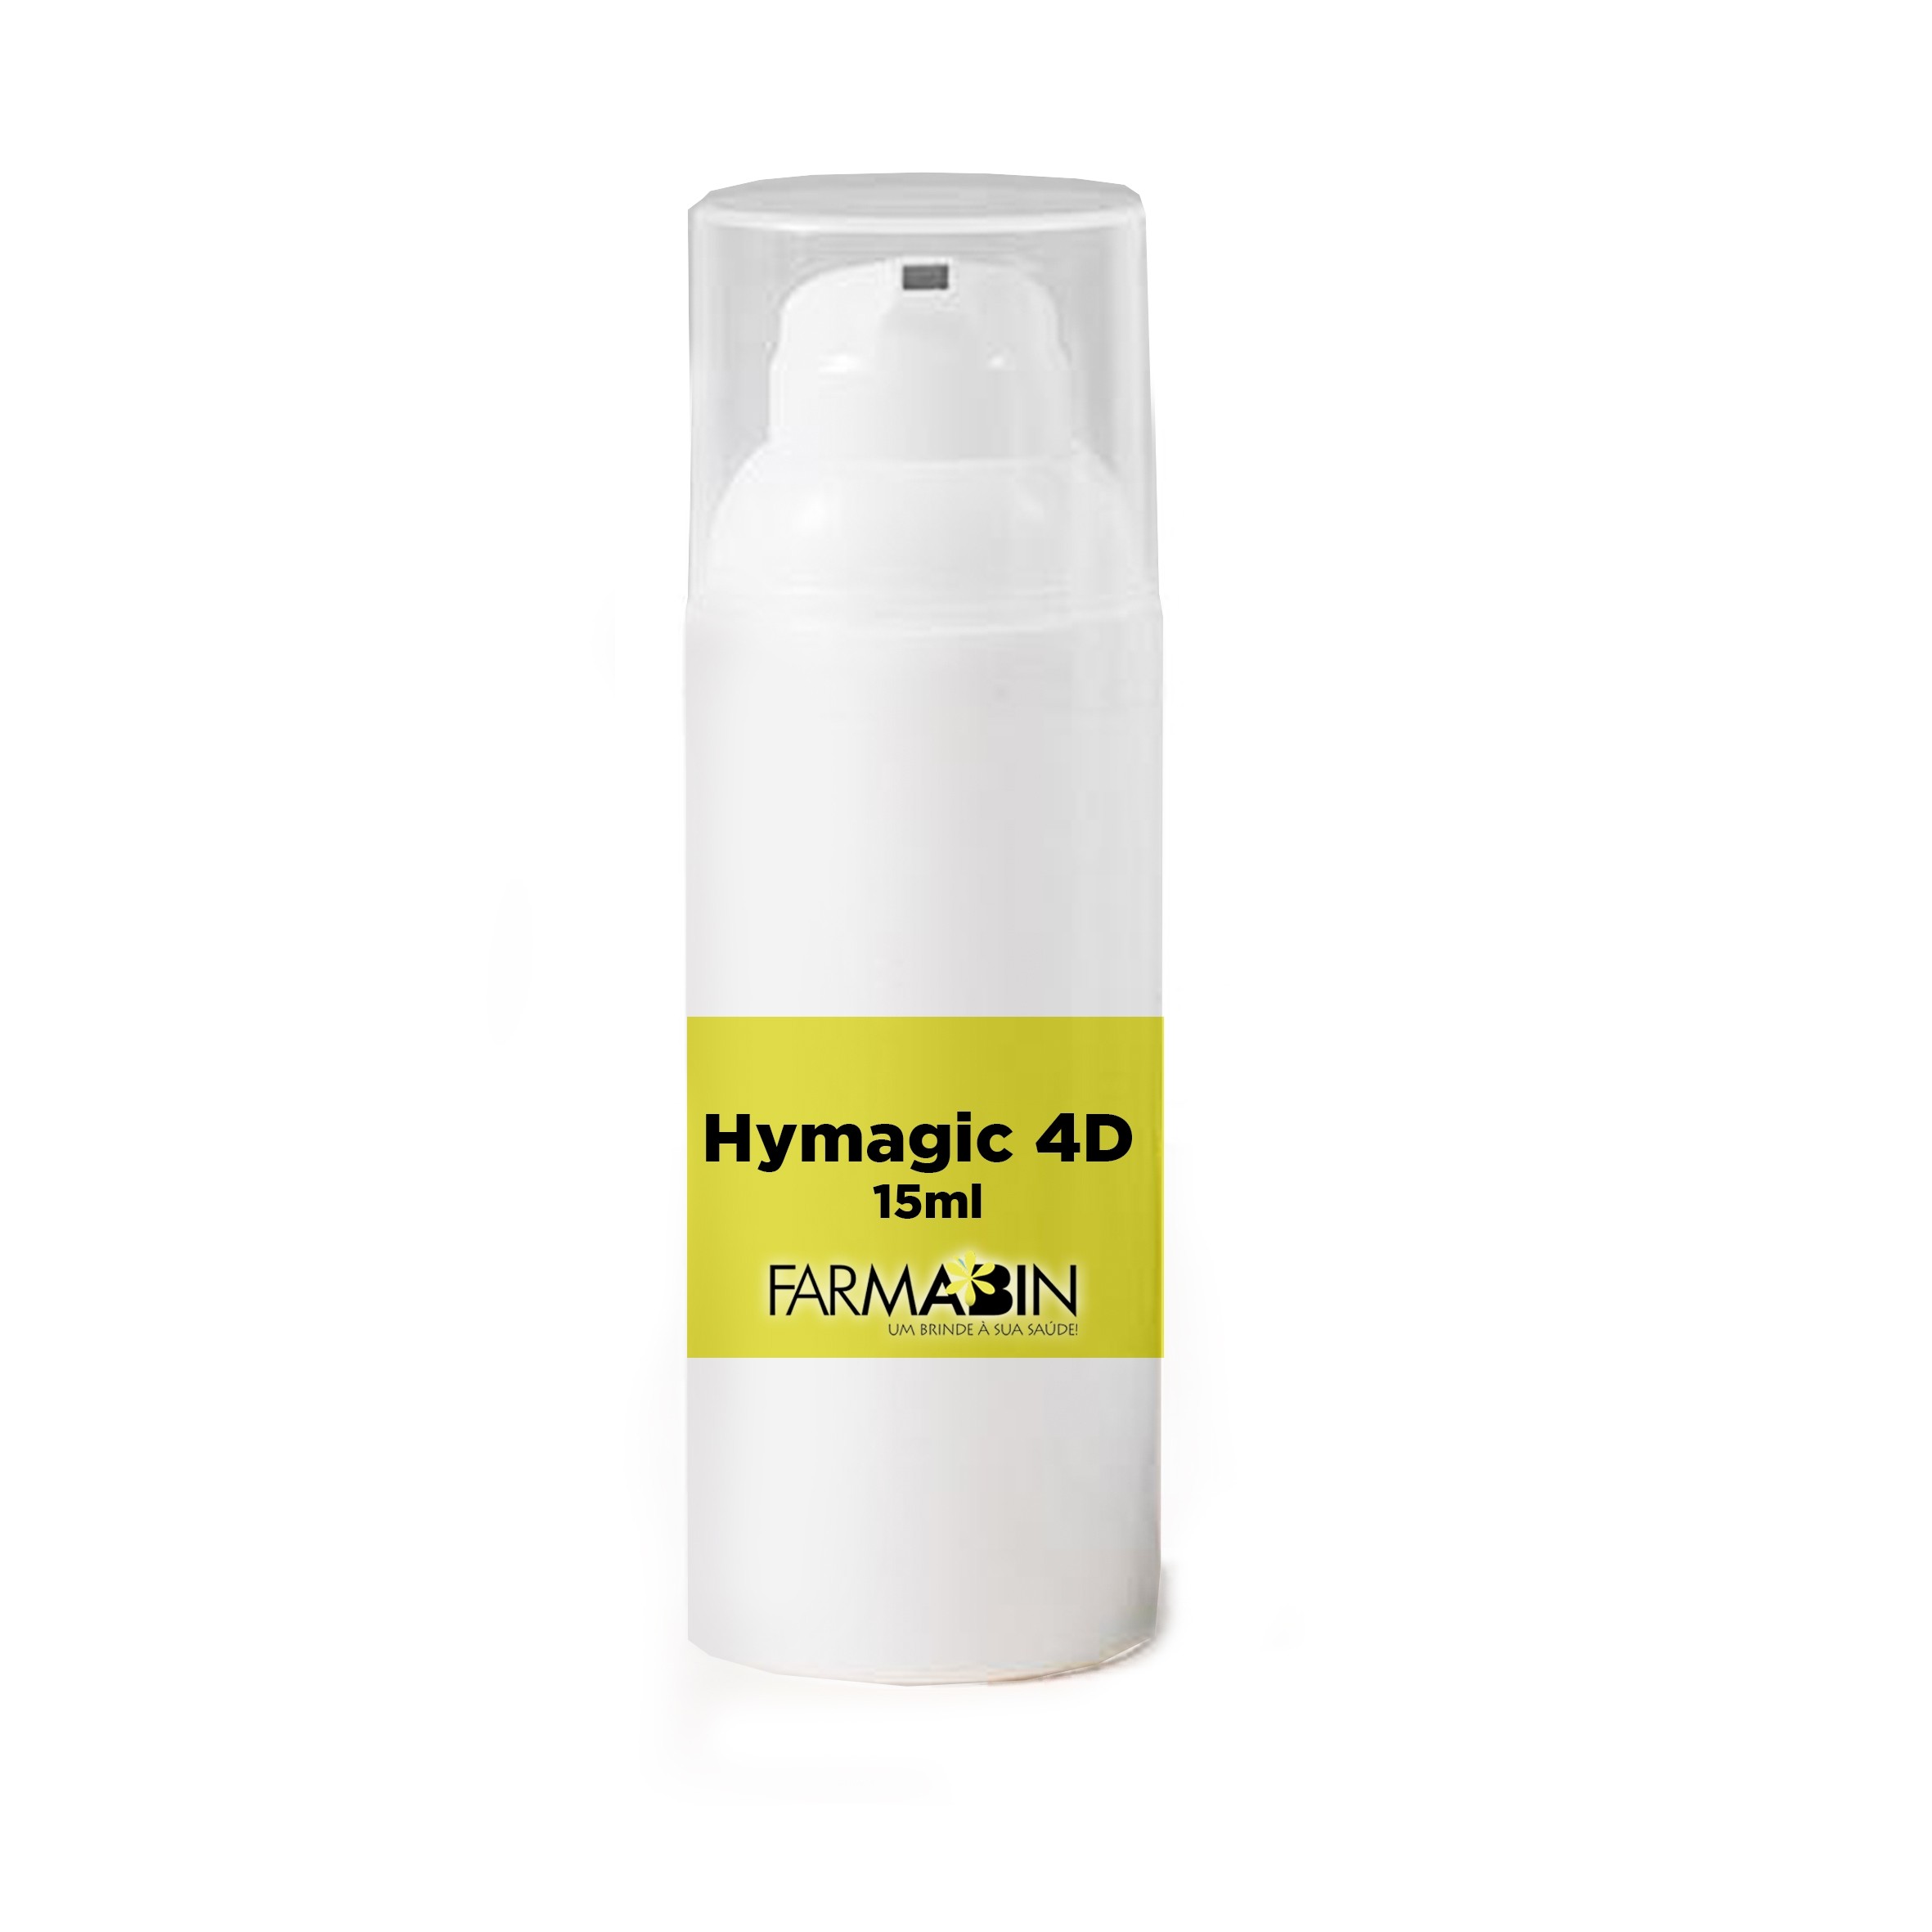 Hymagic 4D